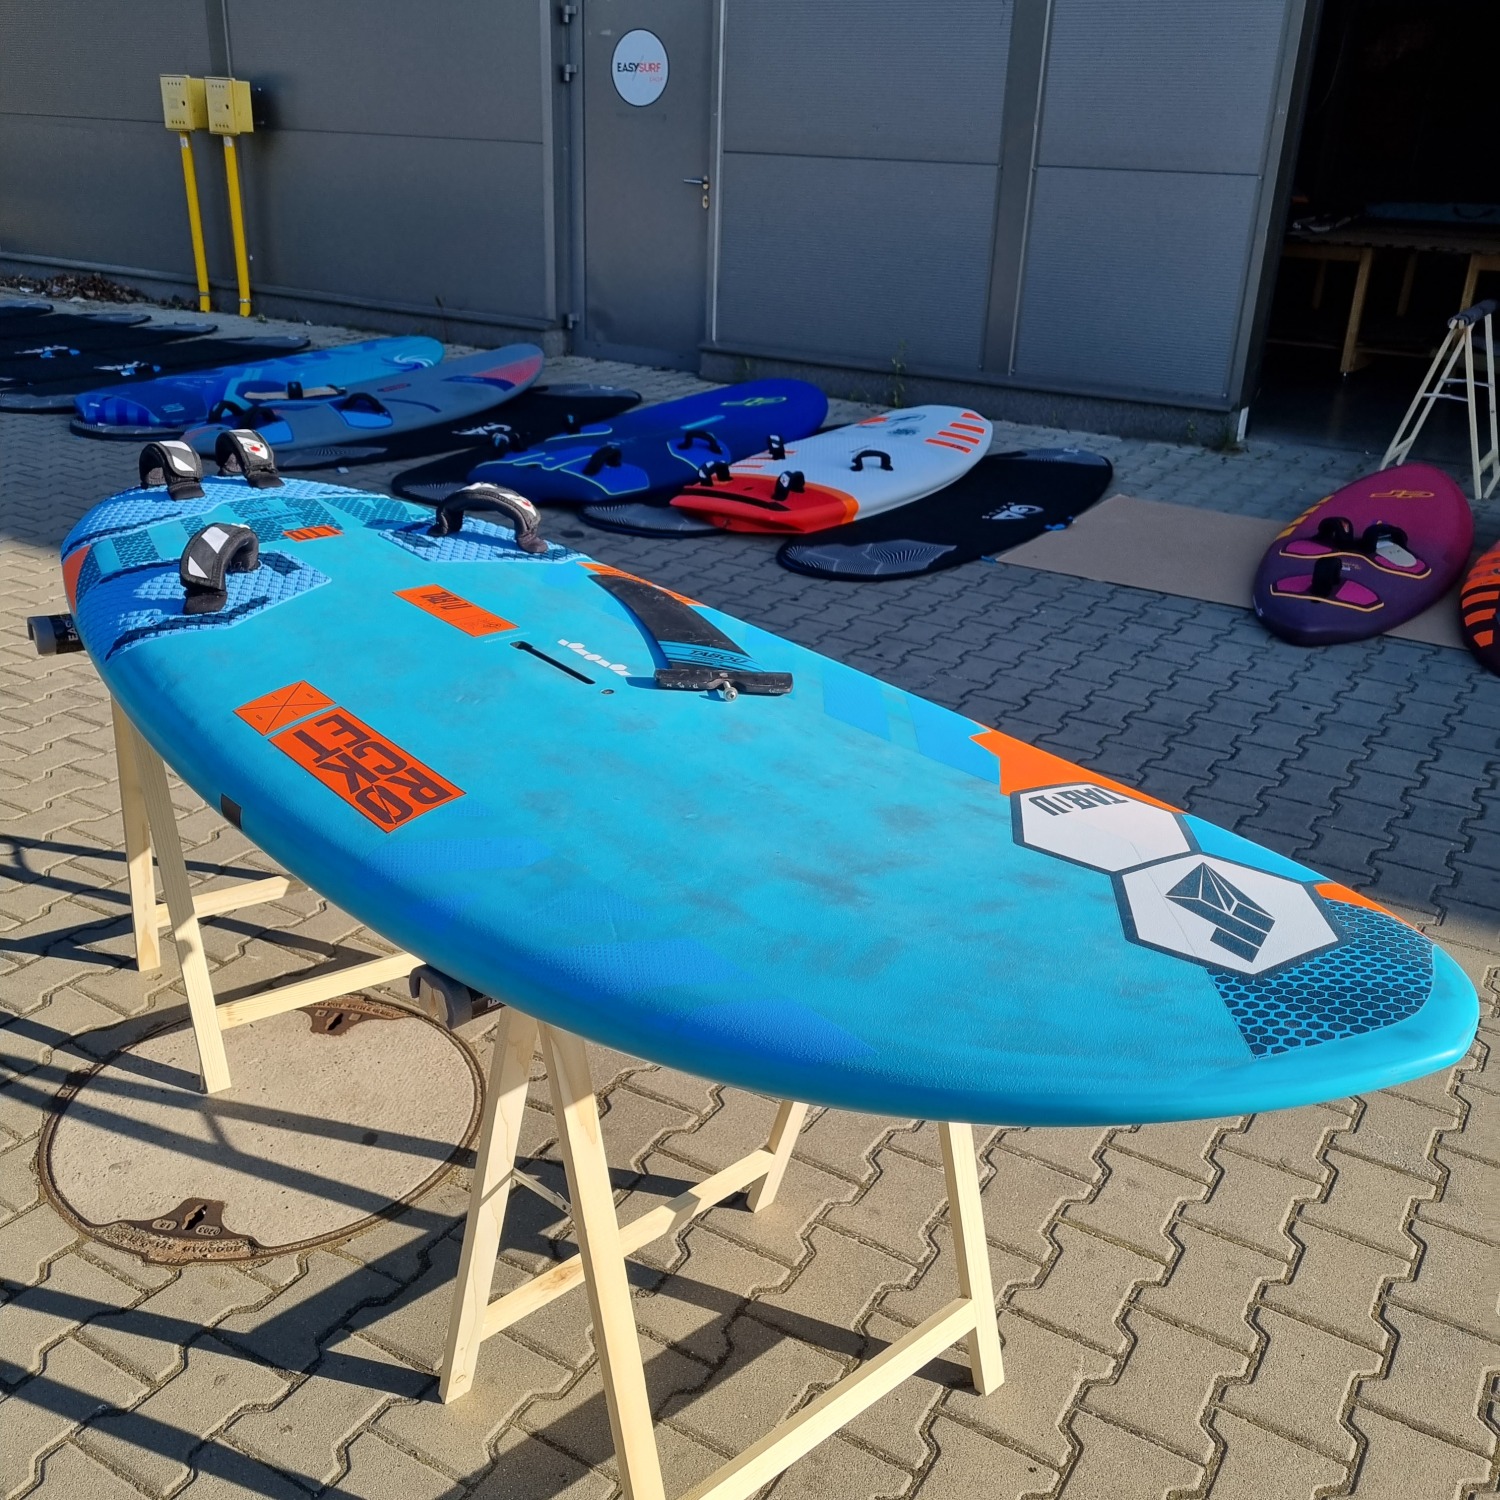 TABOU Windsurf board Rocket 135 LTD 2021 - Price, Reviews - EASY SURF Shop